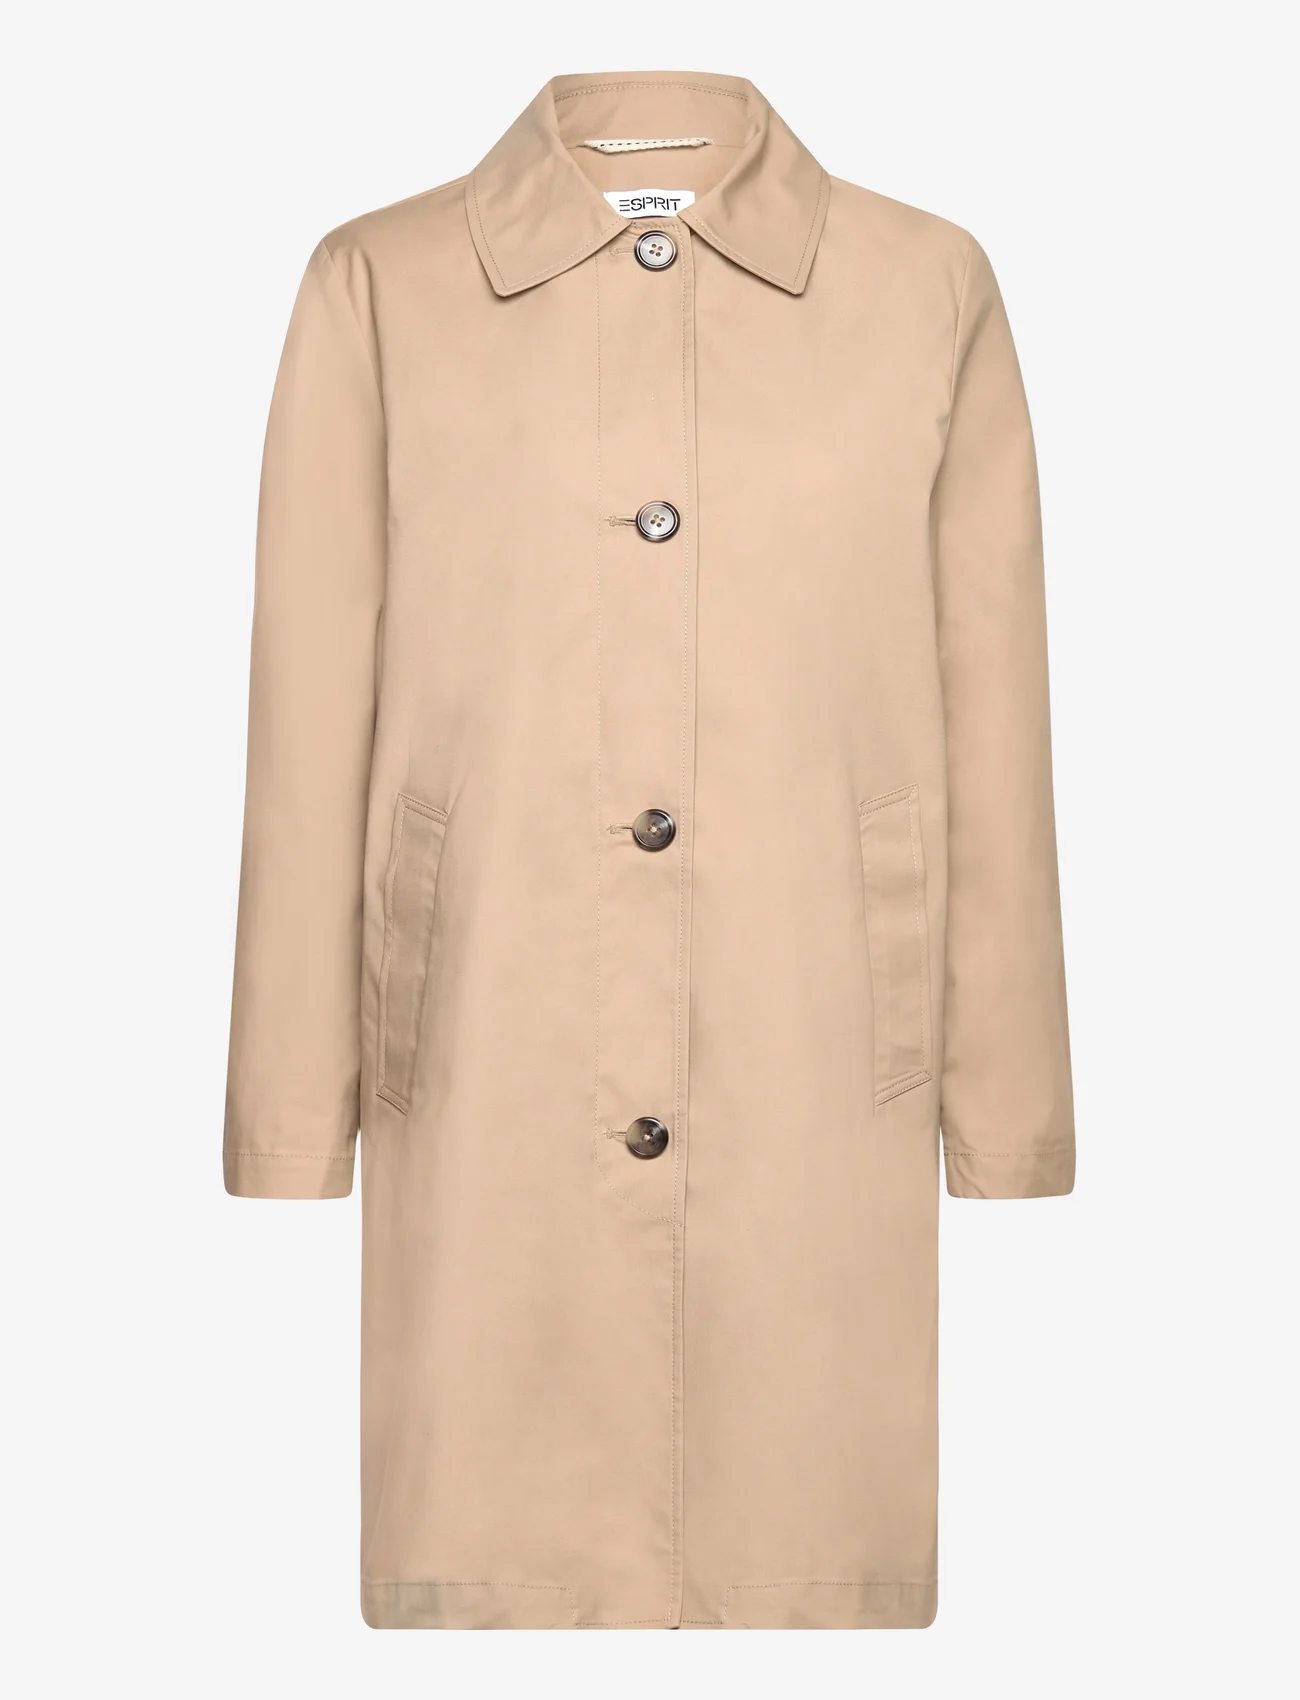 Esprit Casual - Coats woven - light coats - beige - 0